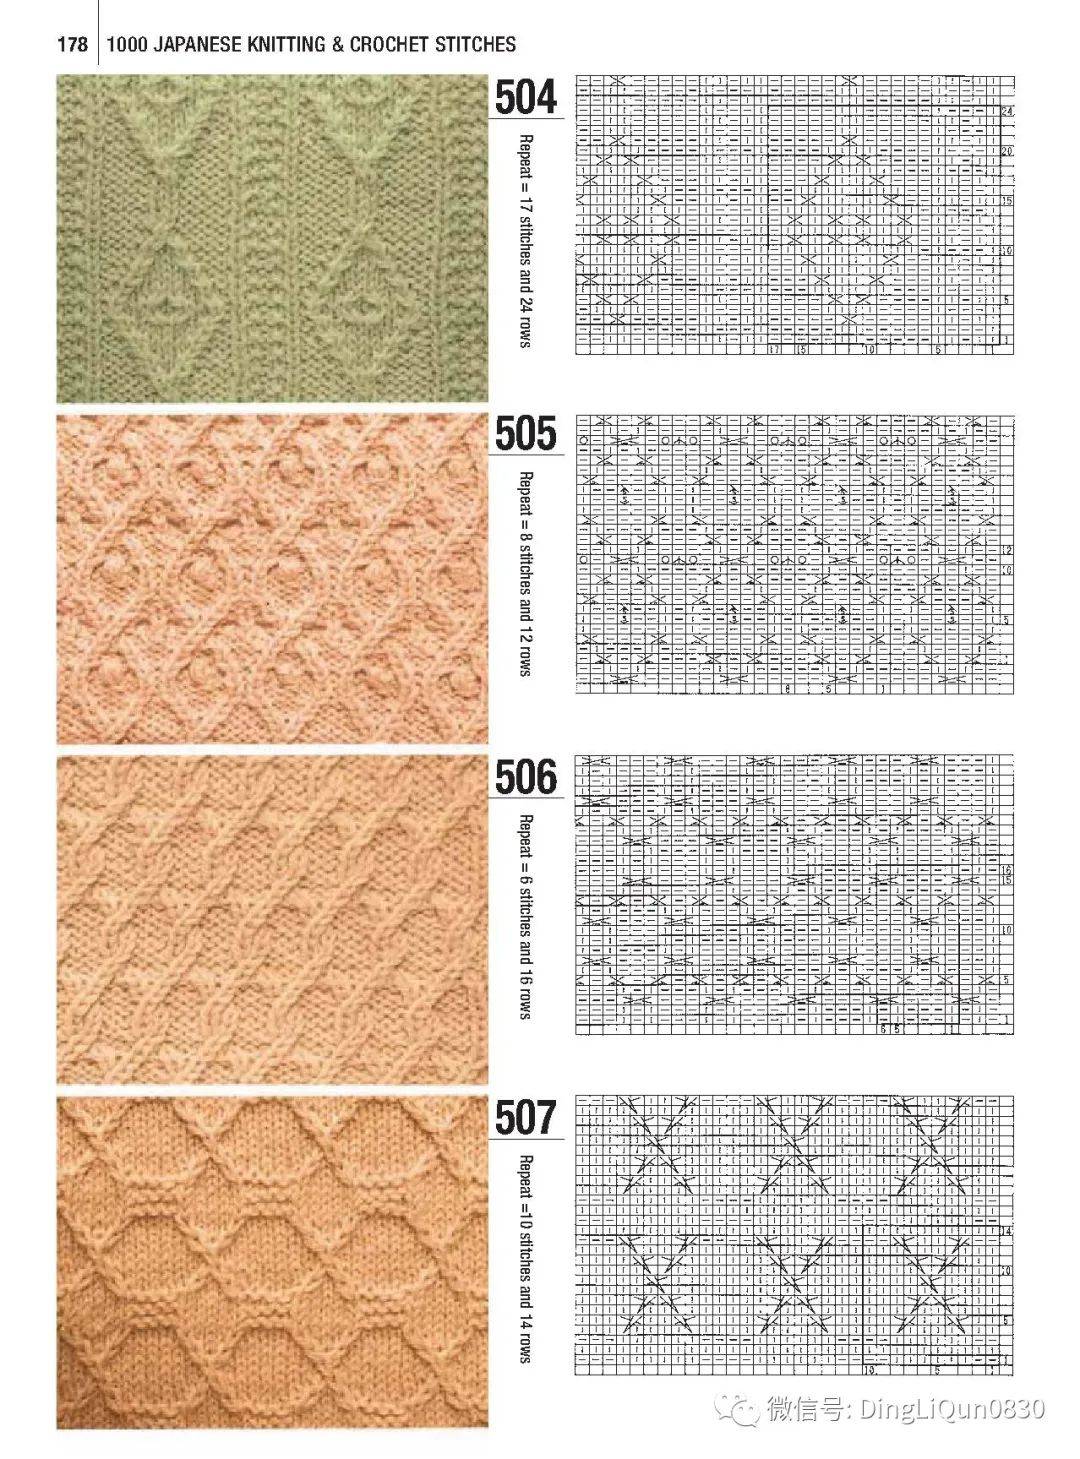 「针织图解」最新的700个棒针编织图案,织毛衣有用(下篇)